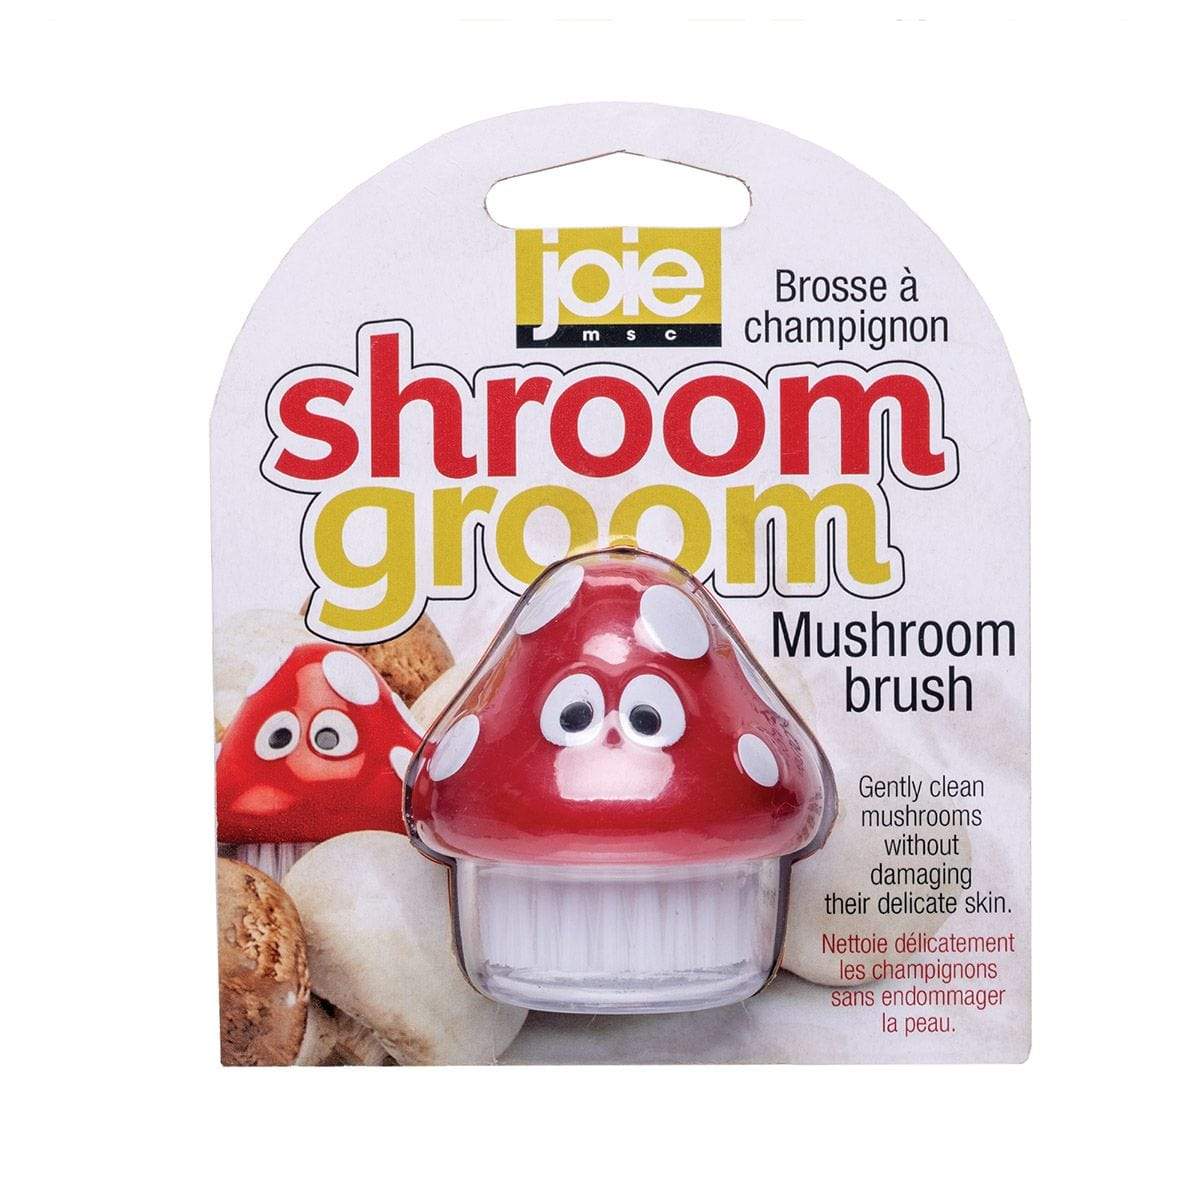 Joie Mushroom Brush Joie Shroom Groom Mushroom Brush